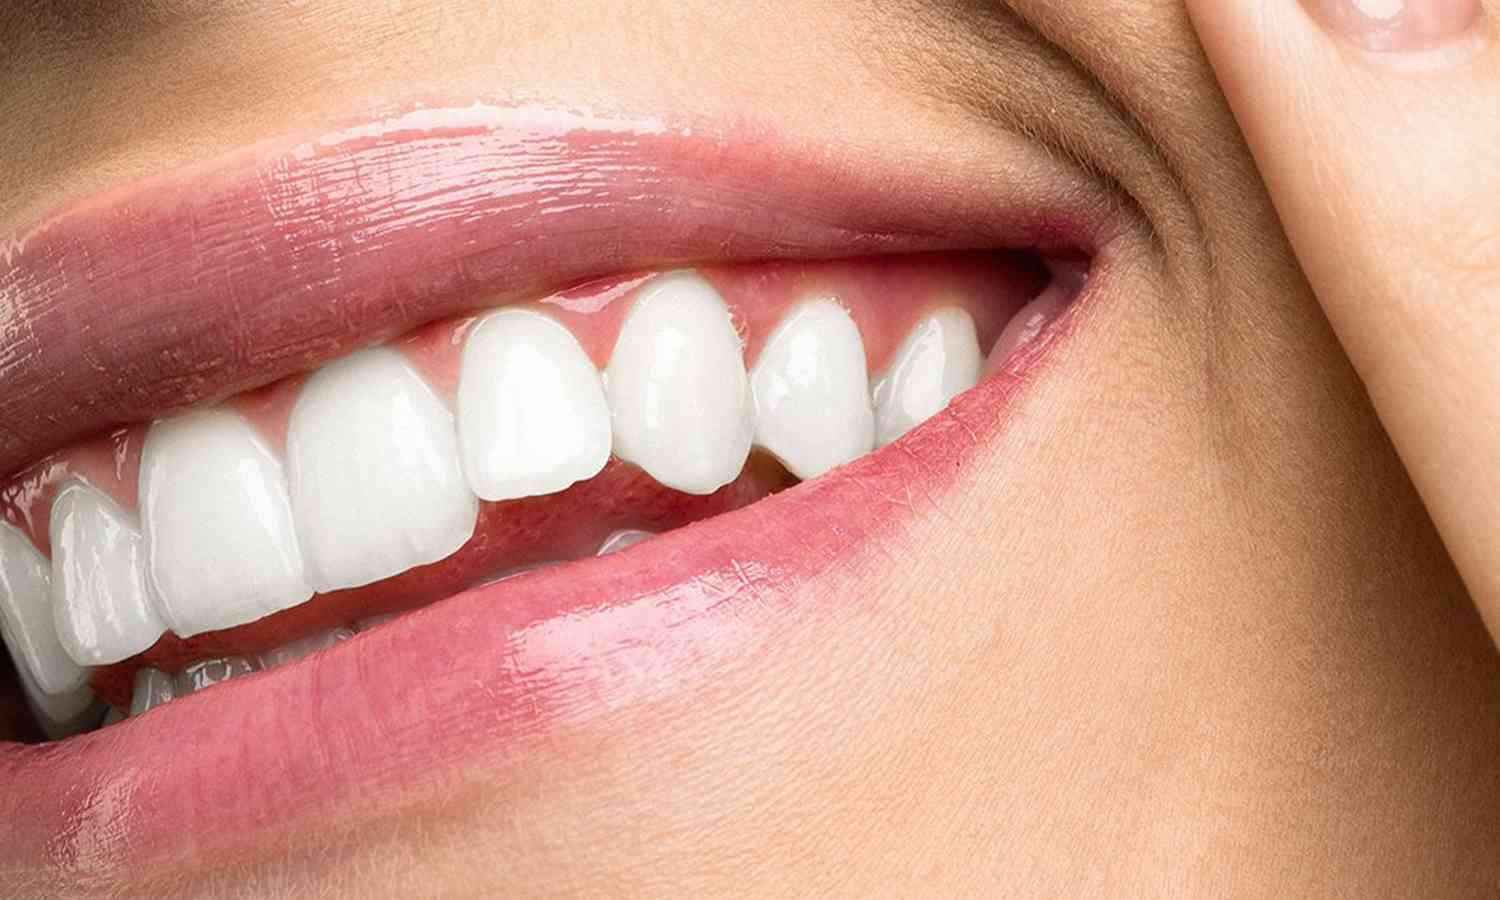 حلم للملايين حول العالم يتحقق..  علاج يعمل على إنبات أسنان جديدة